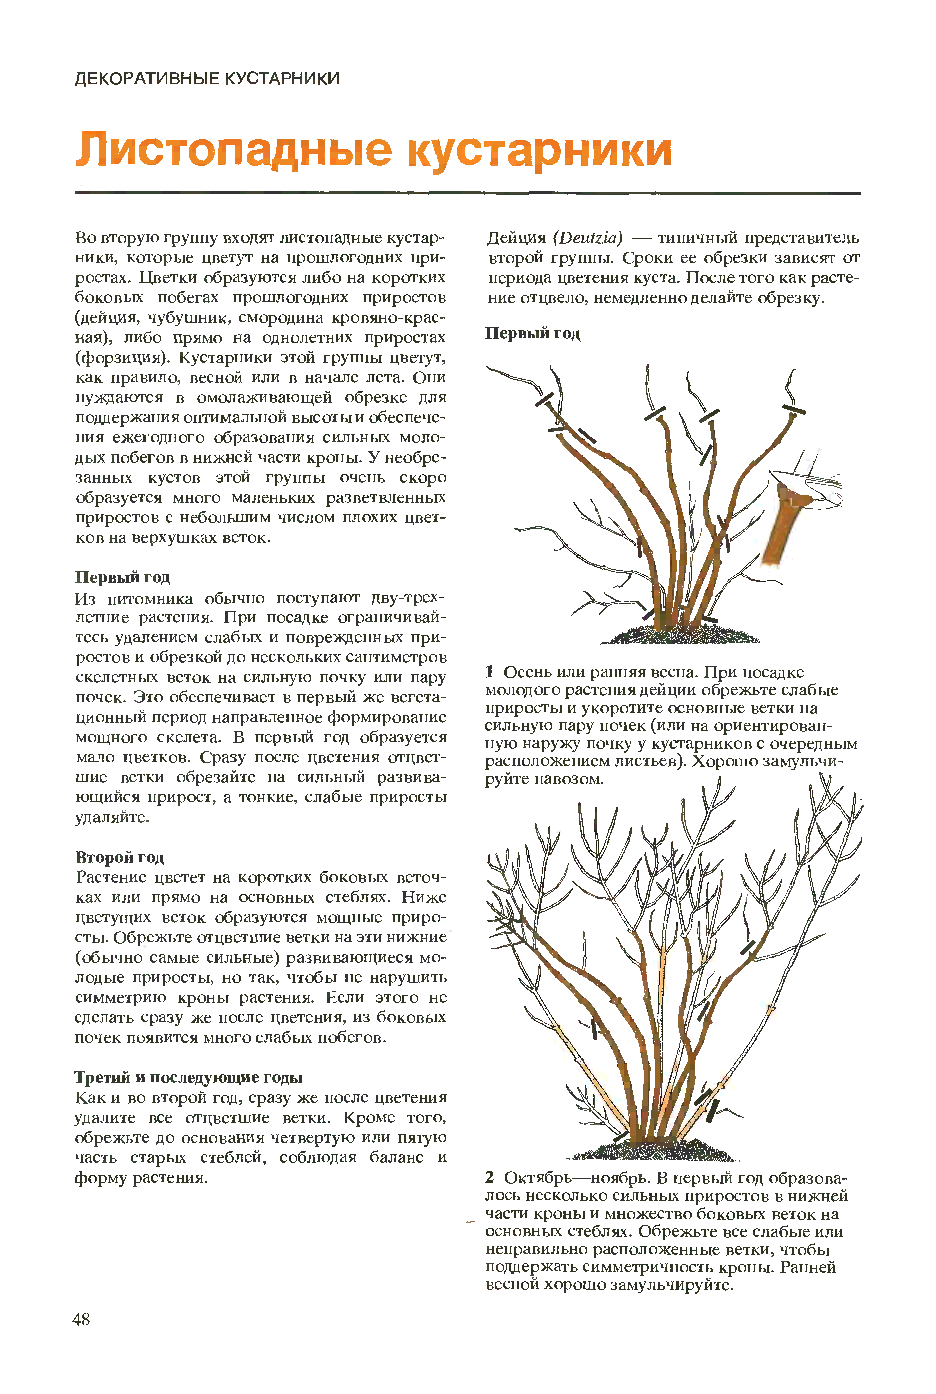 Правила посадки в открытый грунт чубушника шнеештурм: уход, полив, удобрение